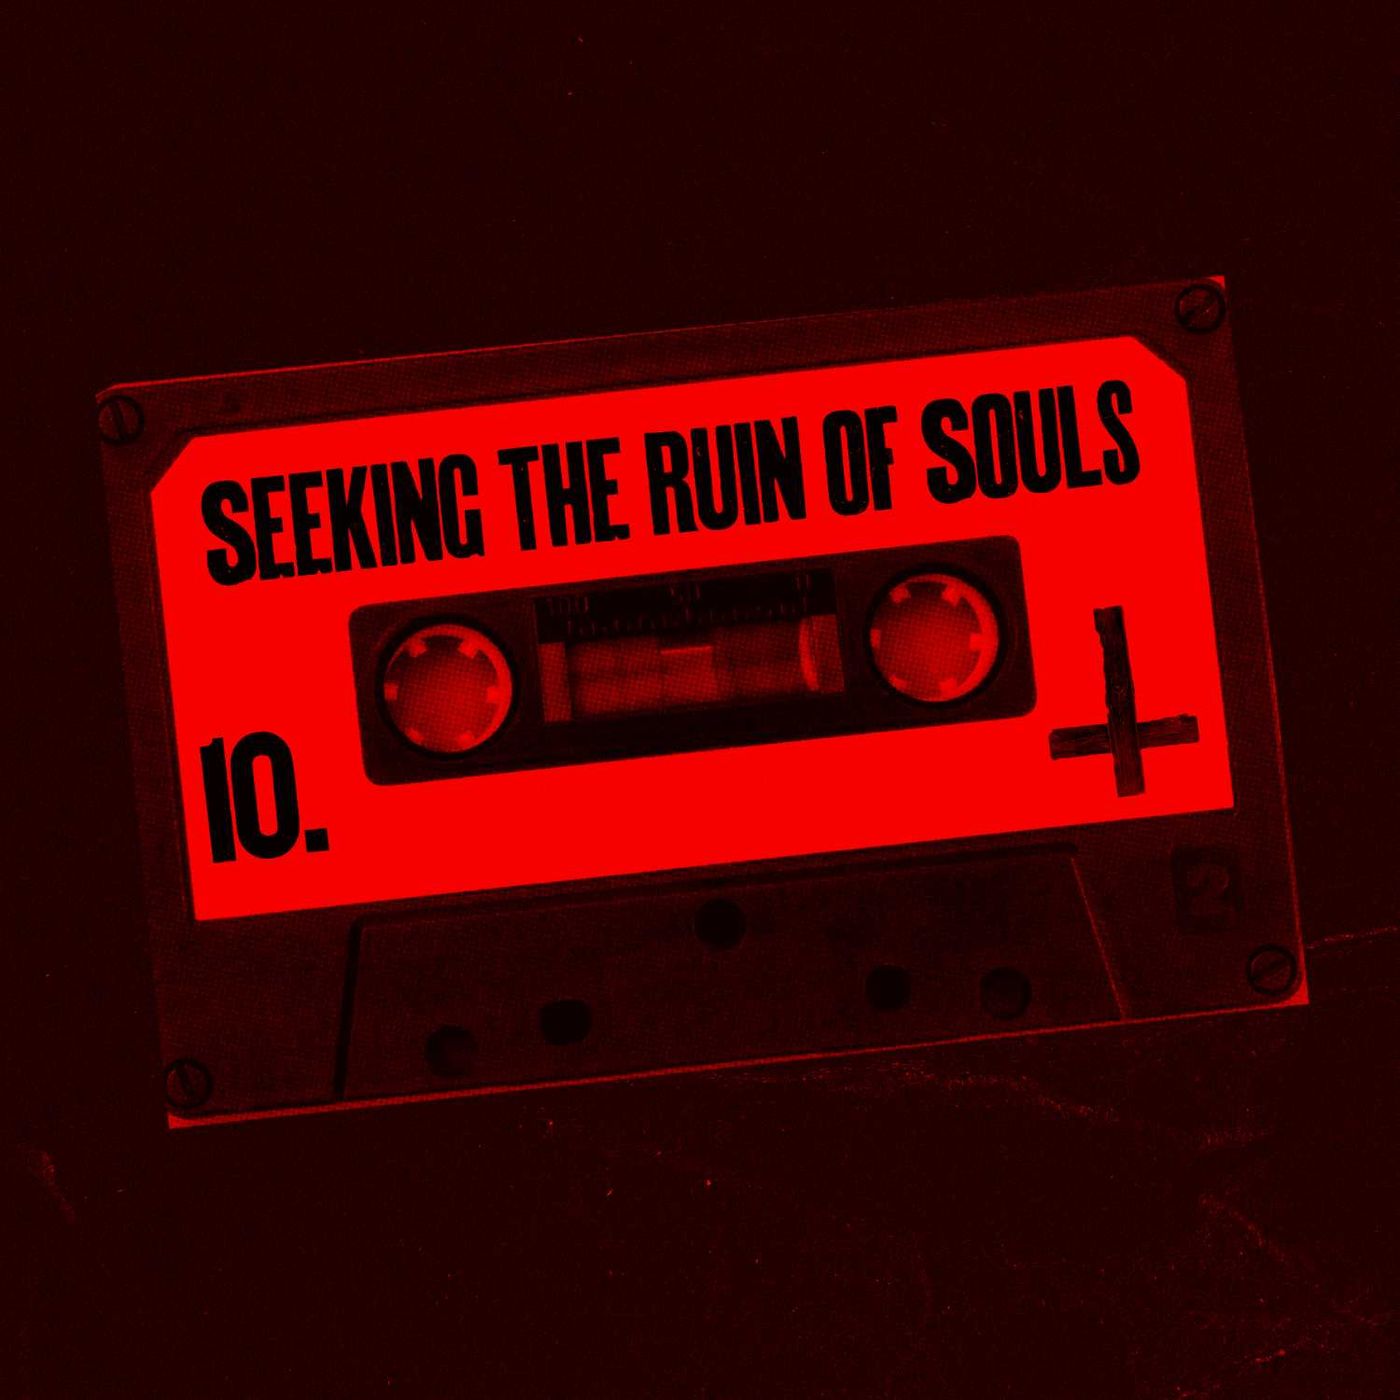 Seeking the Ruin of Souls S1 E10